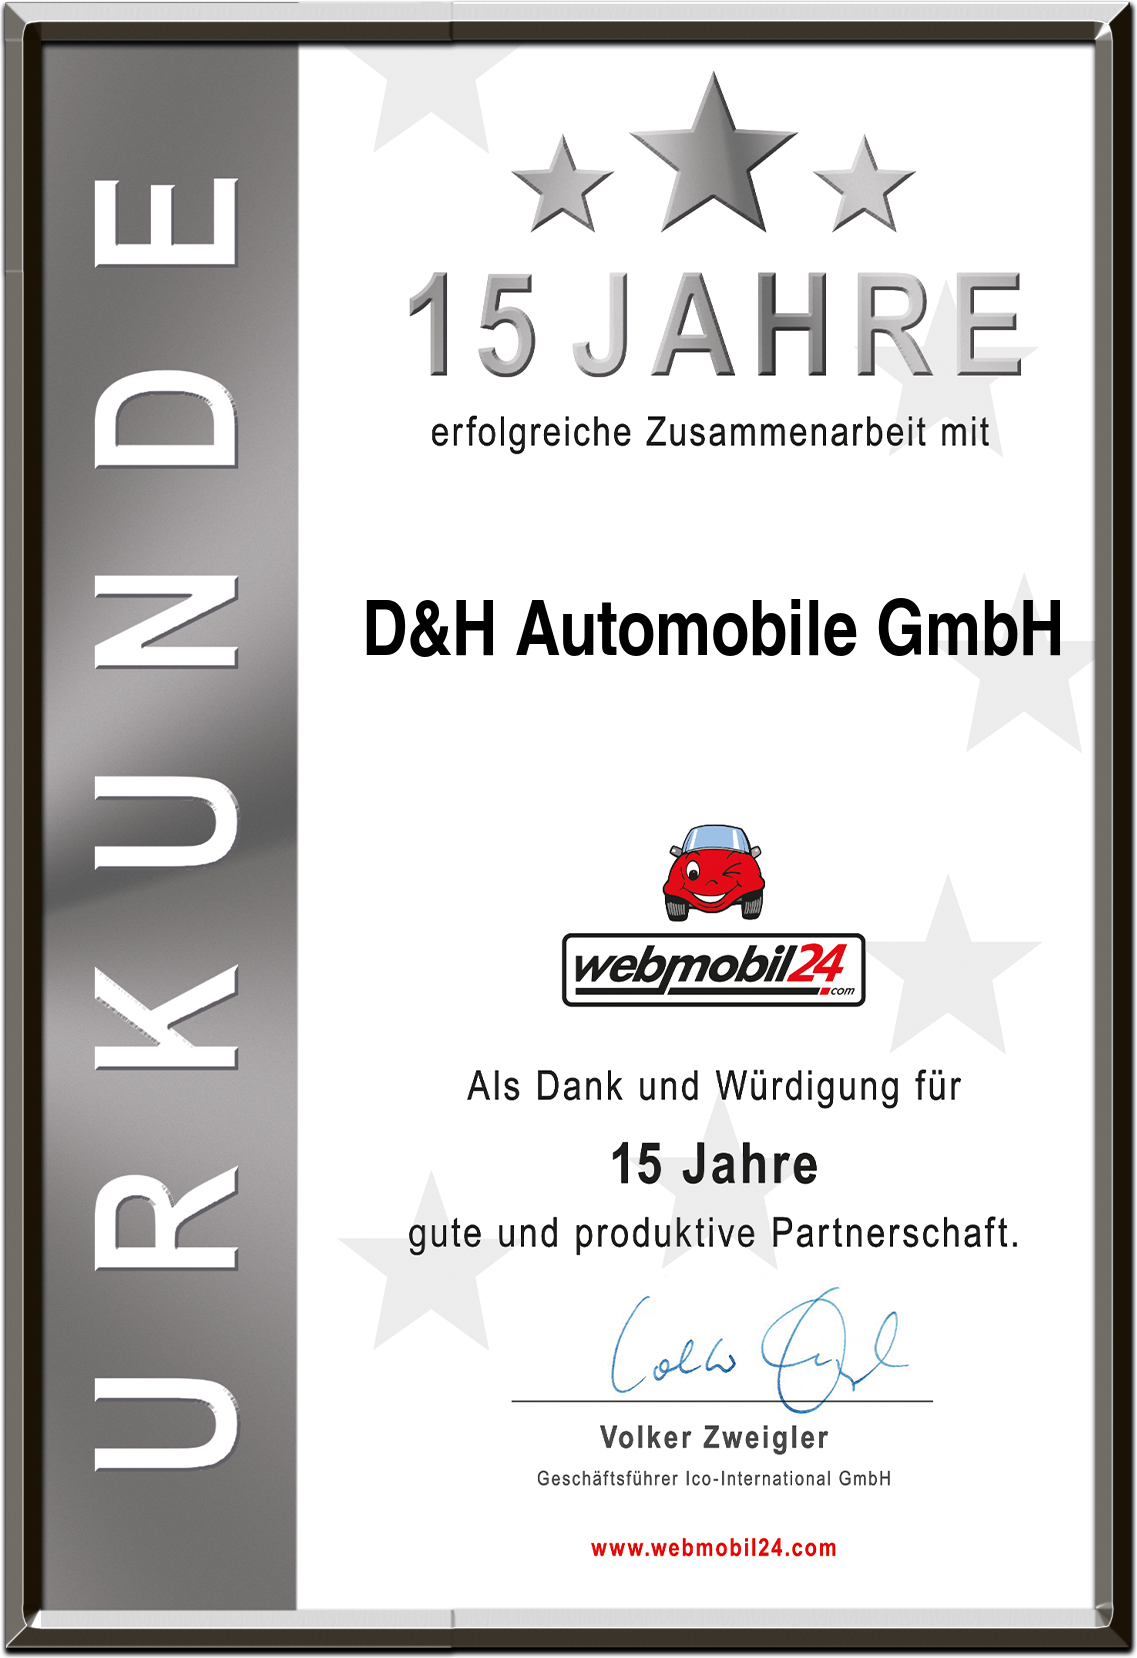 D&H Automobile GmbH